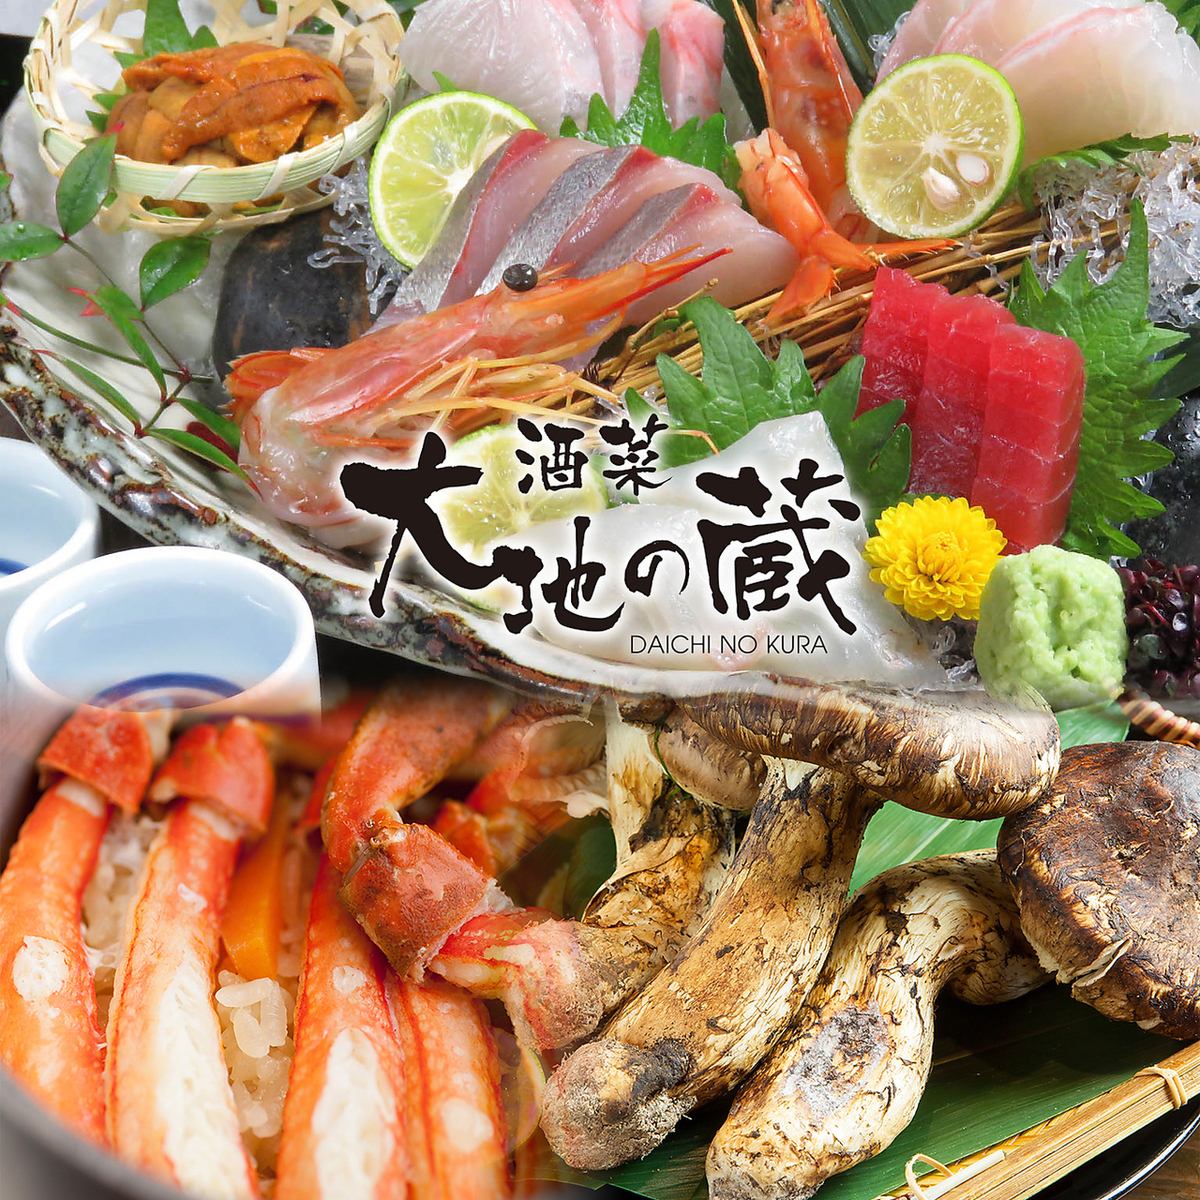 您可以直接前往當地Maizuru的漁港享用時令食材和新鮮的海鮮菜餚。還接受各種宴會。